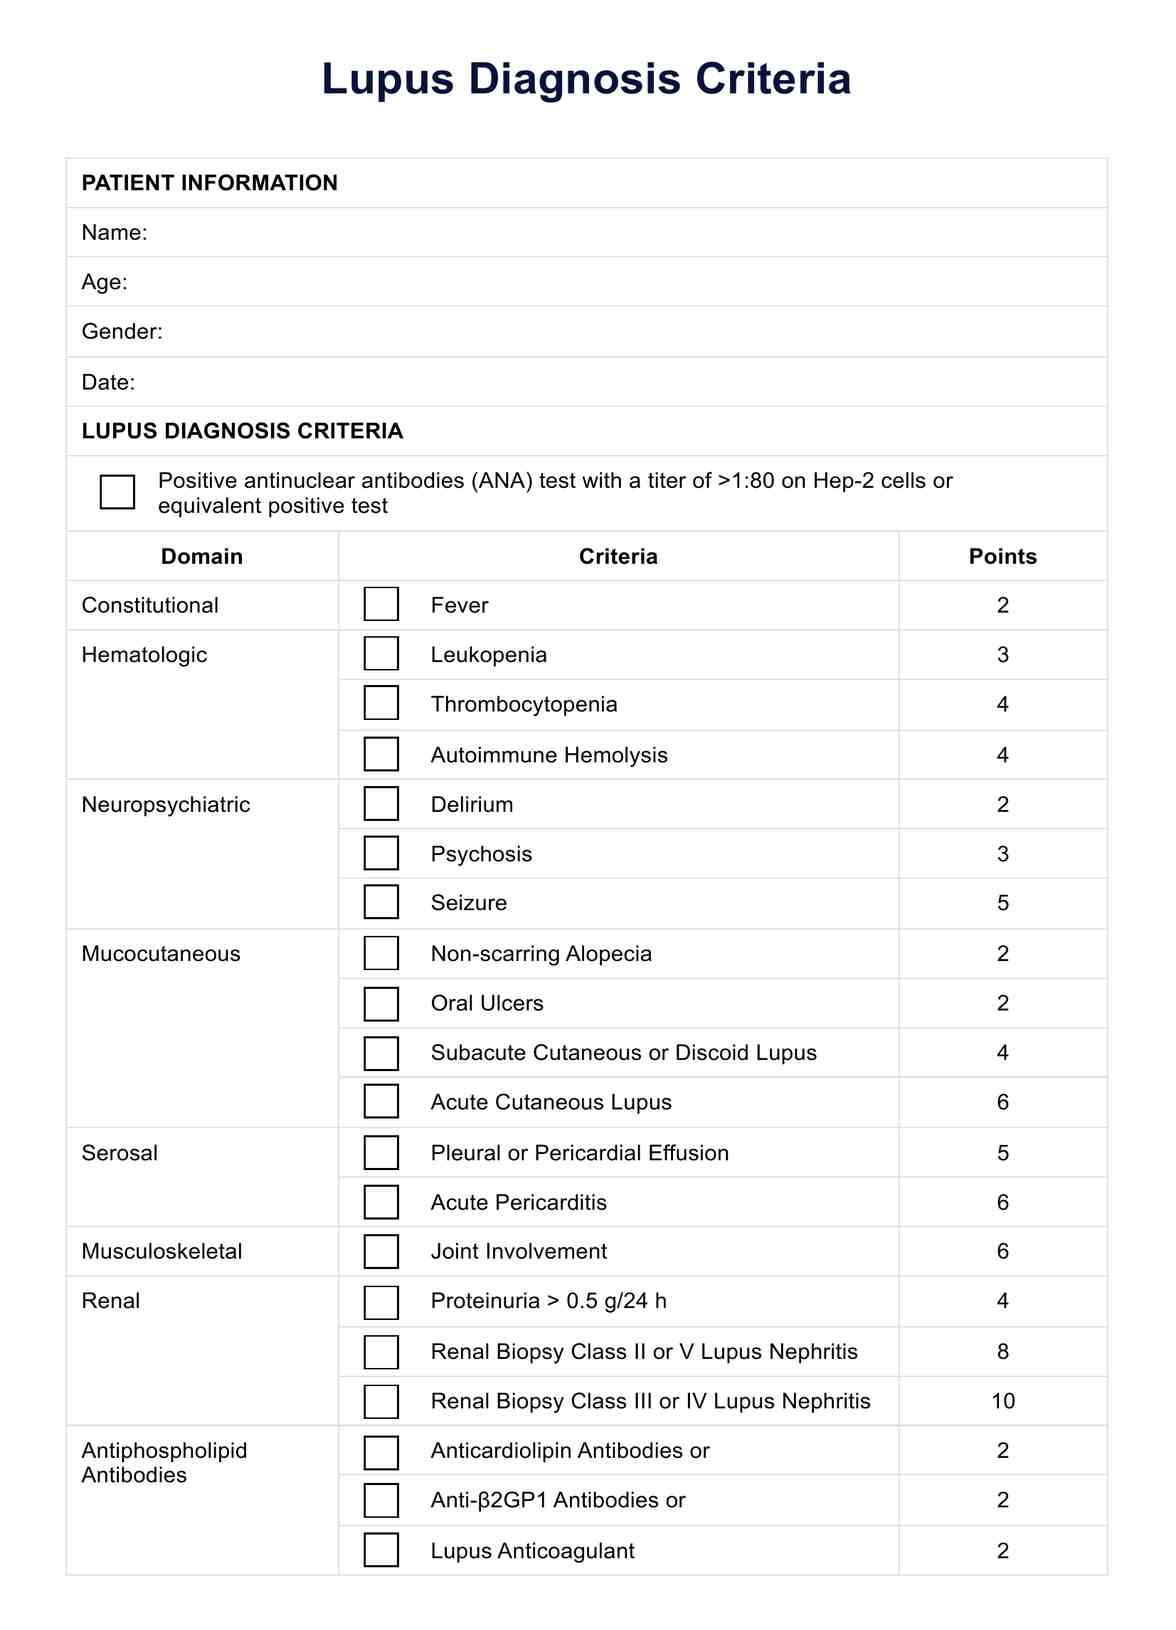 Lupus Diagnosis Criteria PDF Example